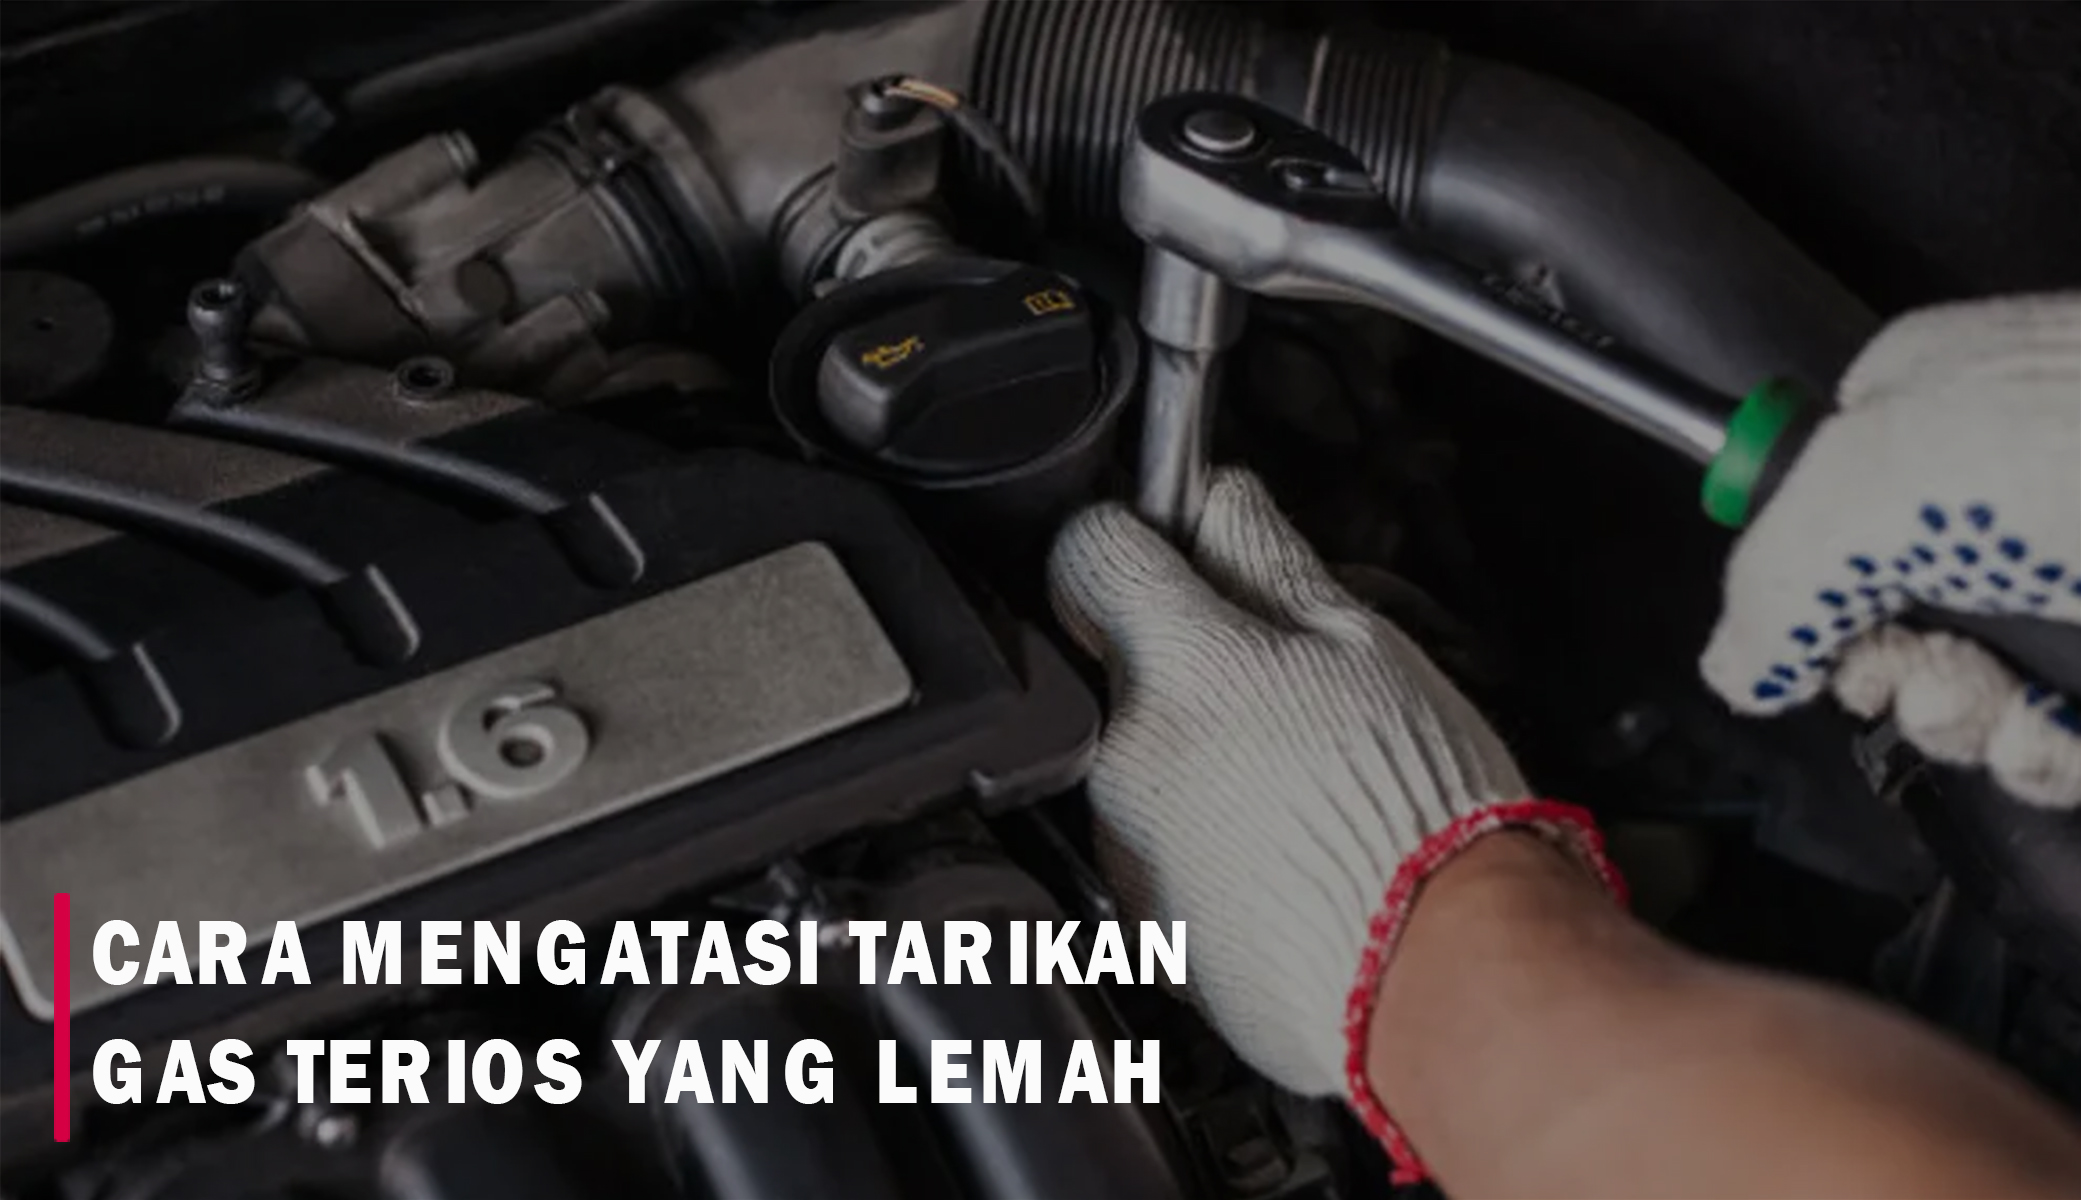 Solusi Tarikan Gas Mobil Daihatsu Terios Lemah, Periksa Komponen Berikut Ini